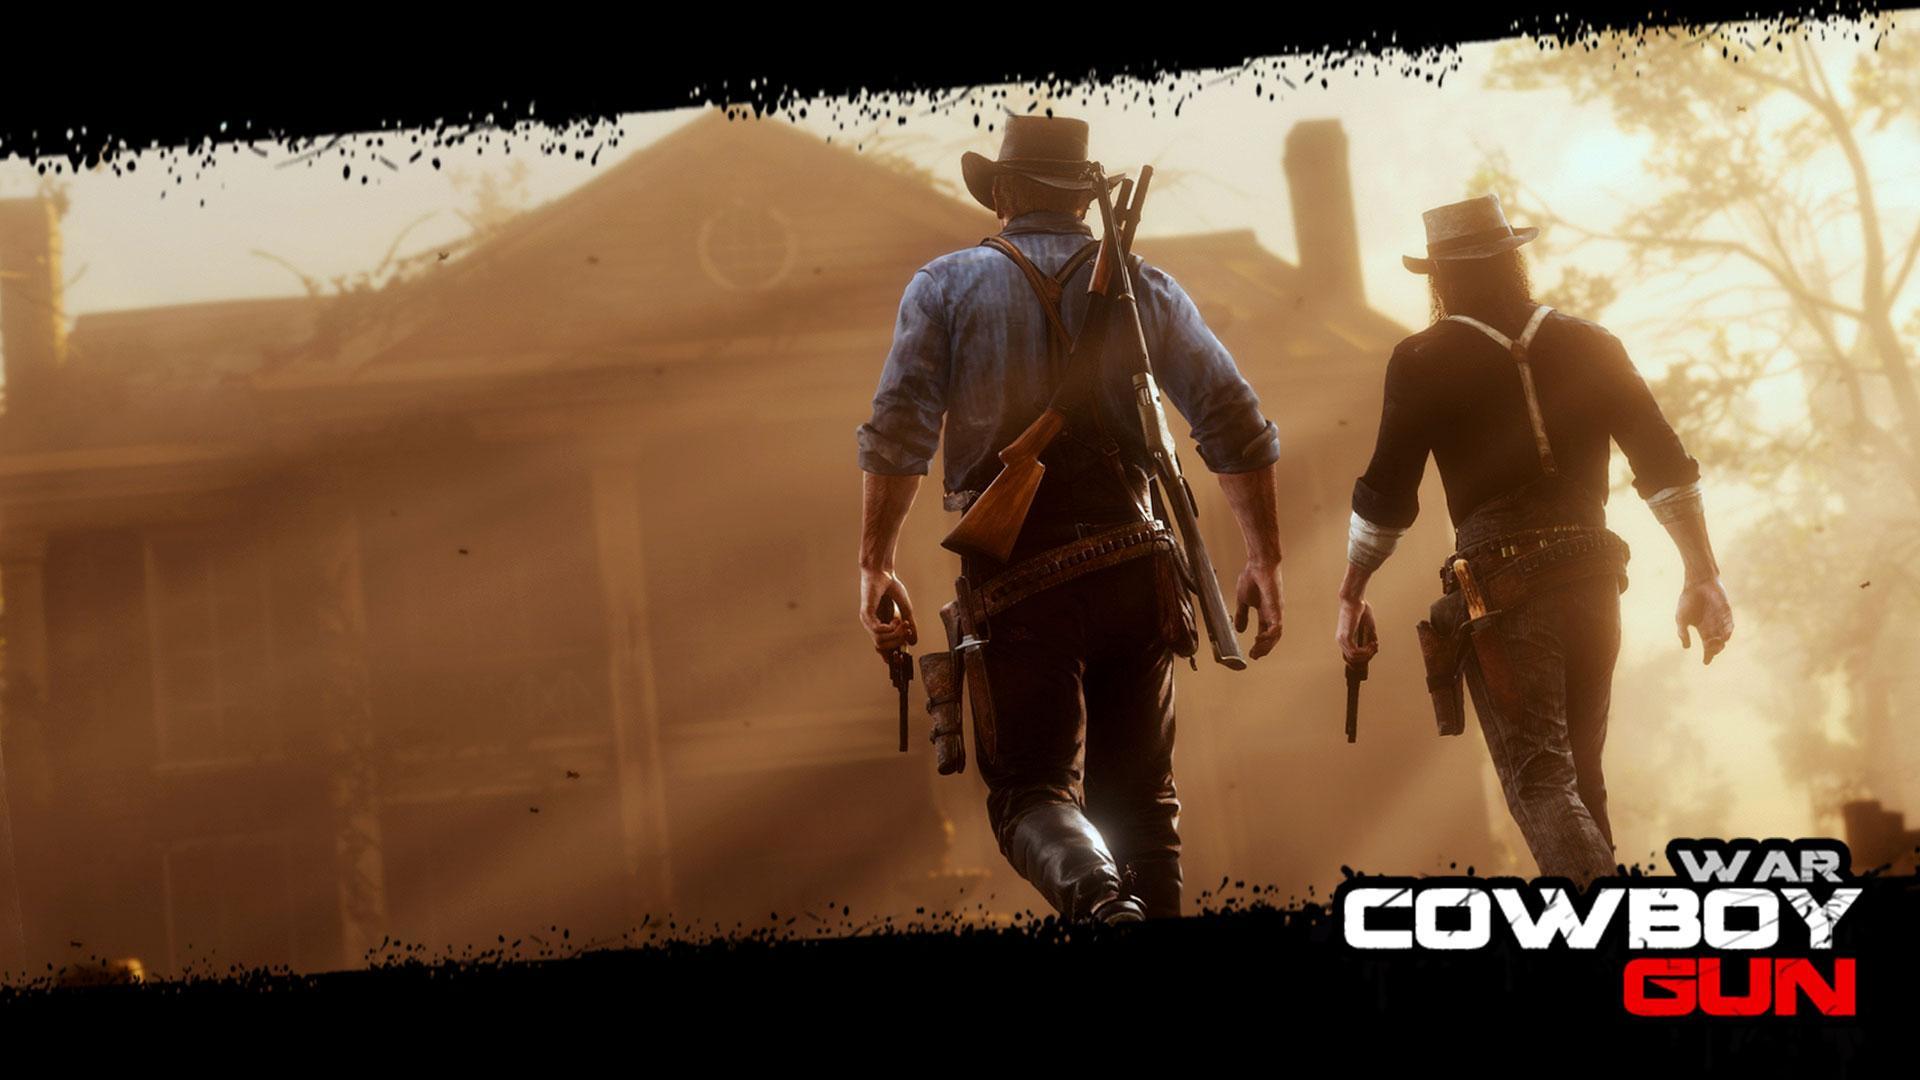 Screenshot 1 of guerra de arma de cowboy 1.1.2